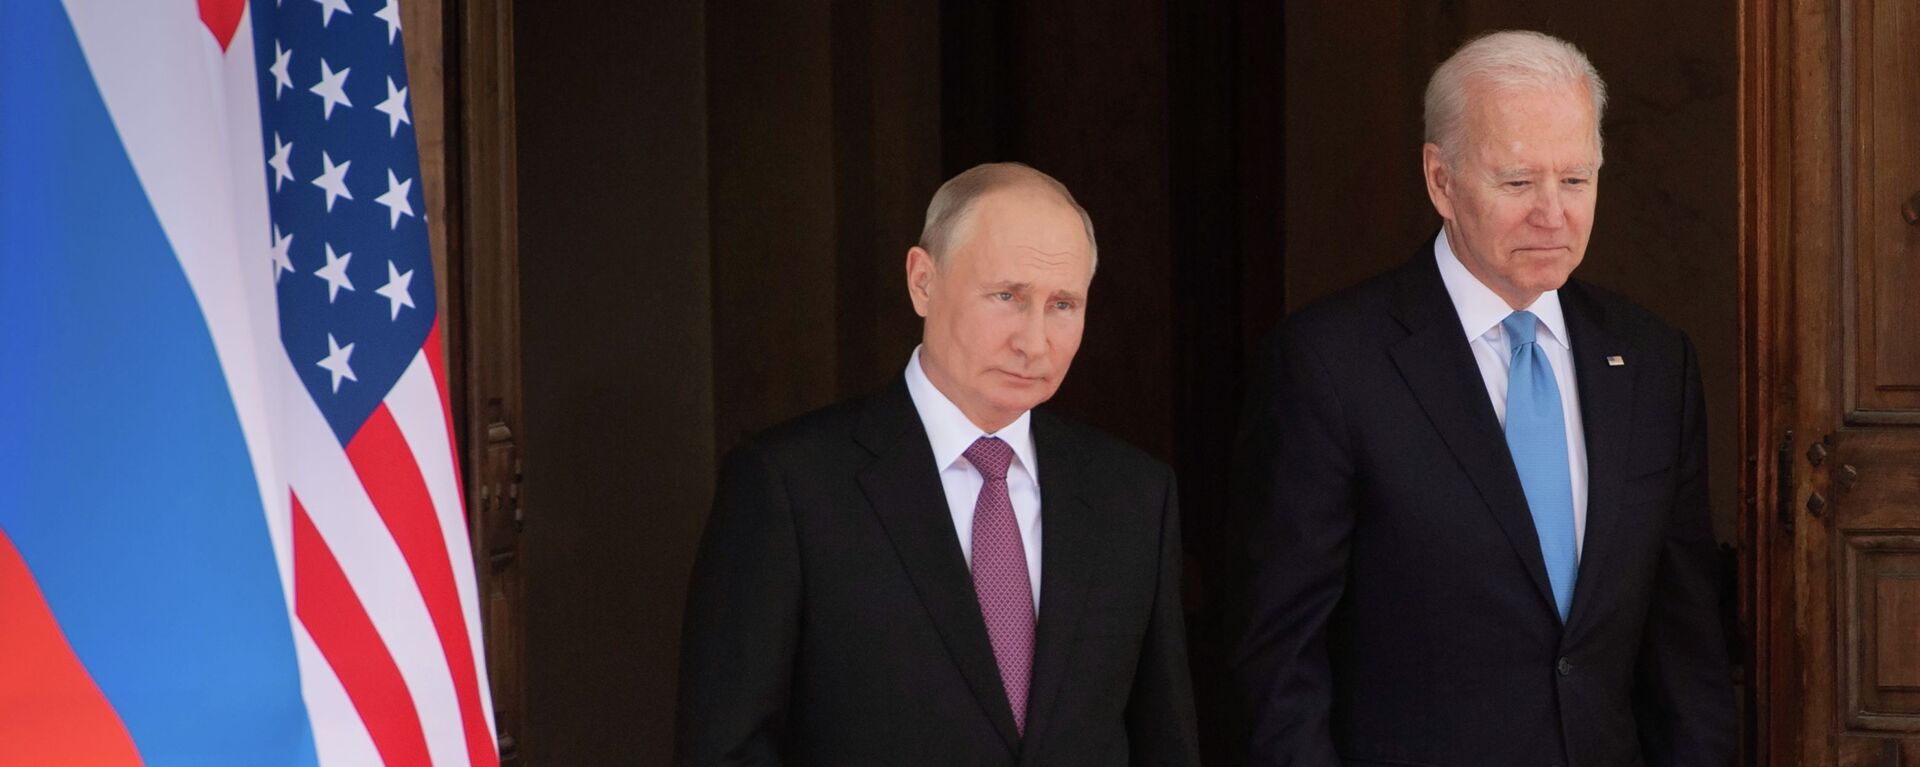 Президент США Джо Байден и президент России Владимир Путин встречаются на саммите США и России на вилле La Grange в Женеве, Швейцария. 16 июня 2021 года - Sputnik Кыргызстан, 1920, 16.06.2021